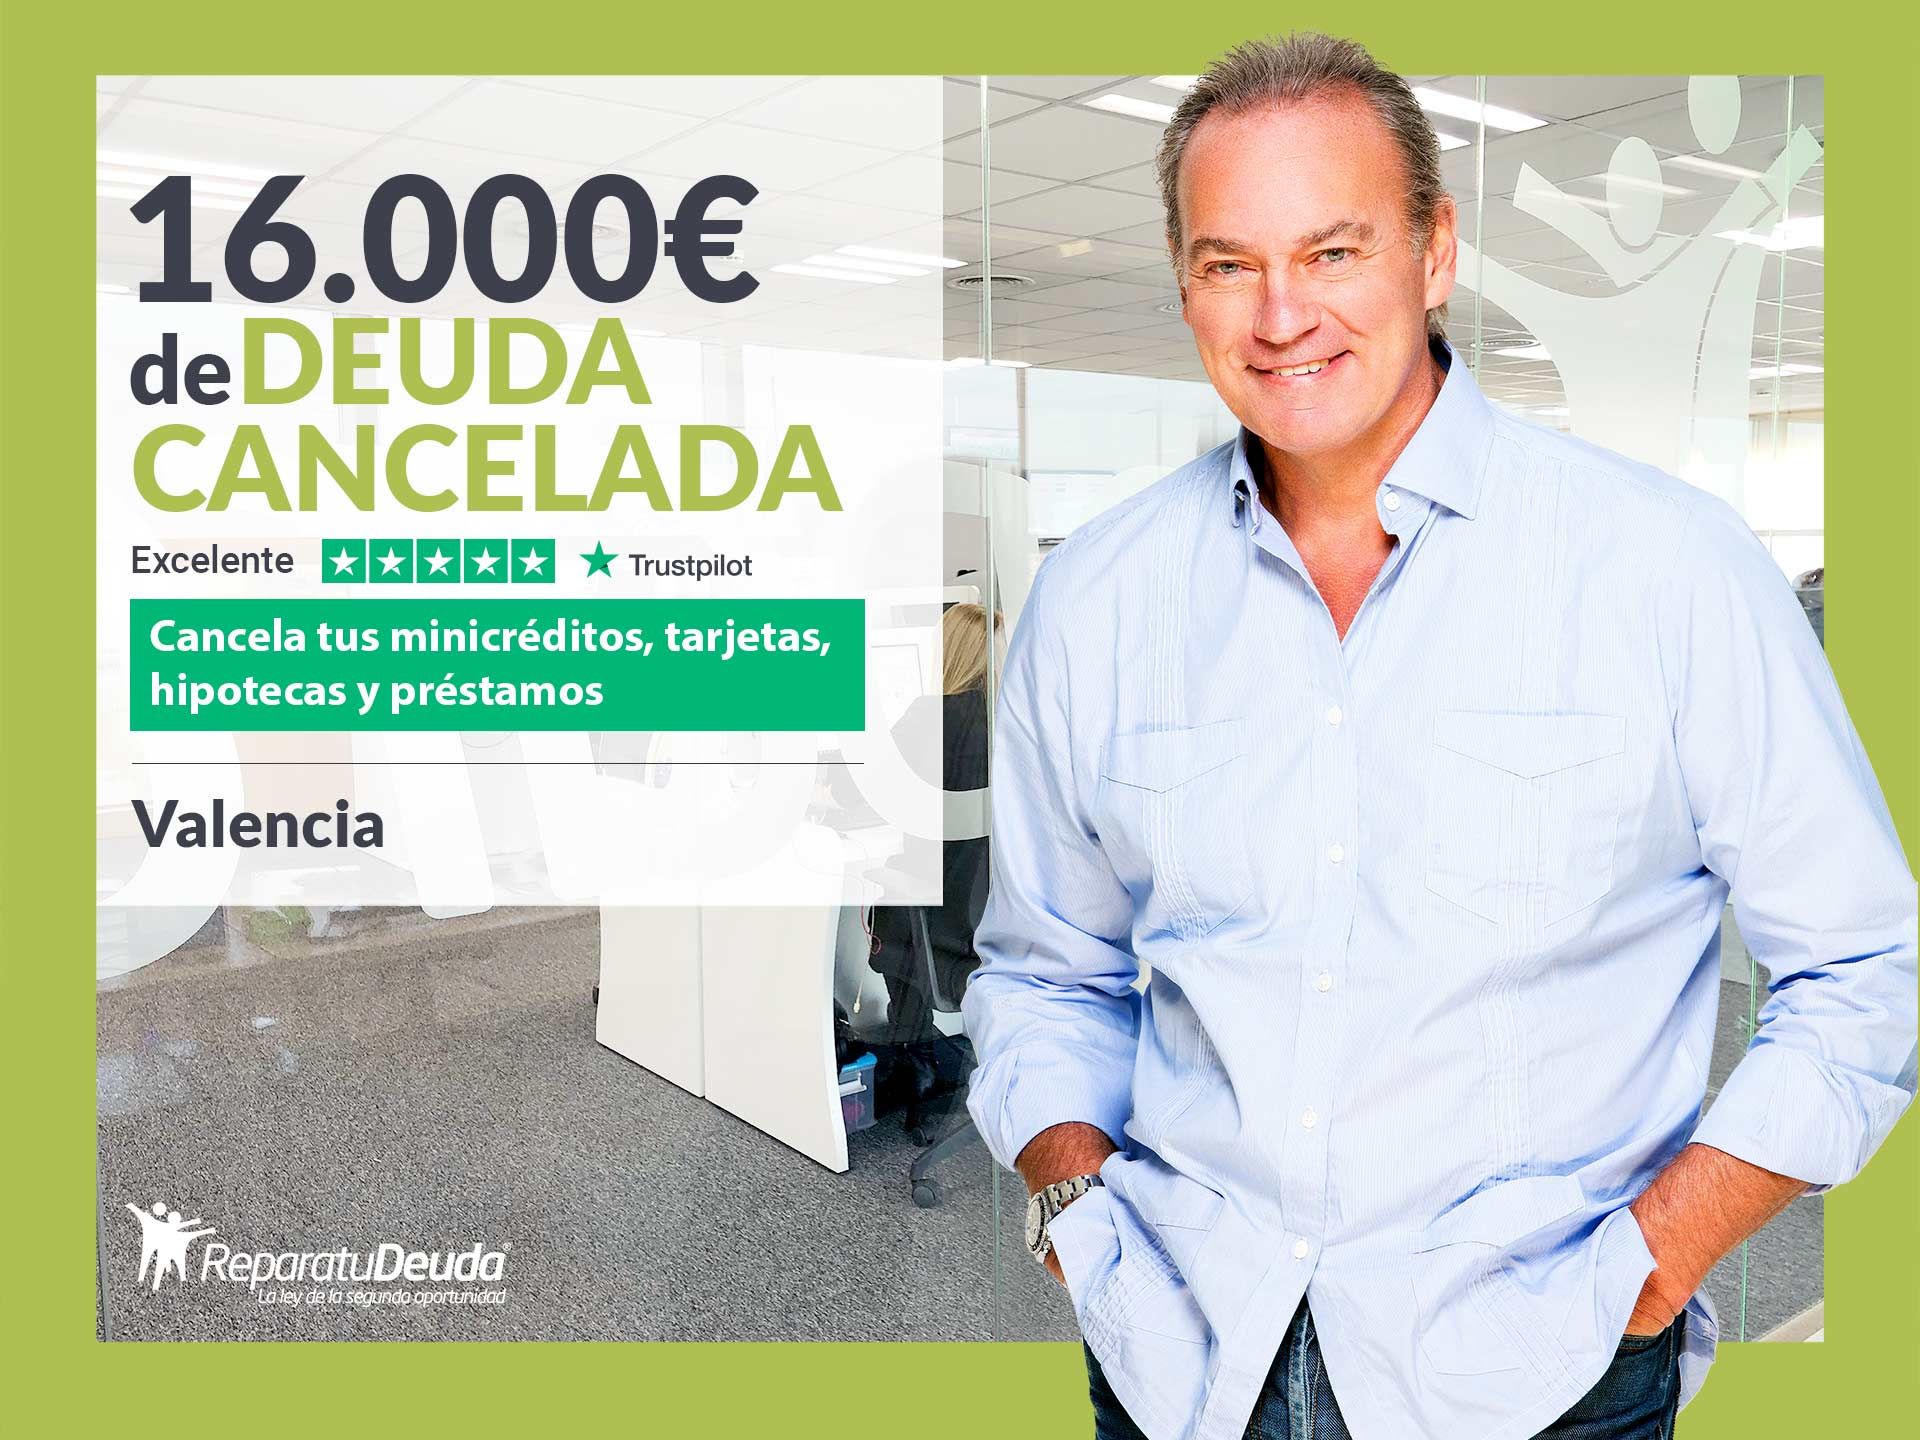 Repara tu Deuda Abogados cancela 16.000? en Valencia con la Ley de Segunda Oportunidad